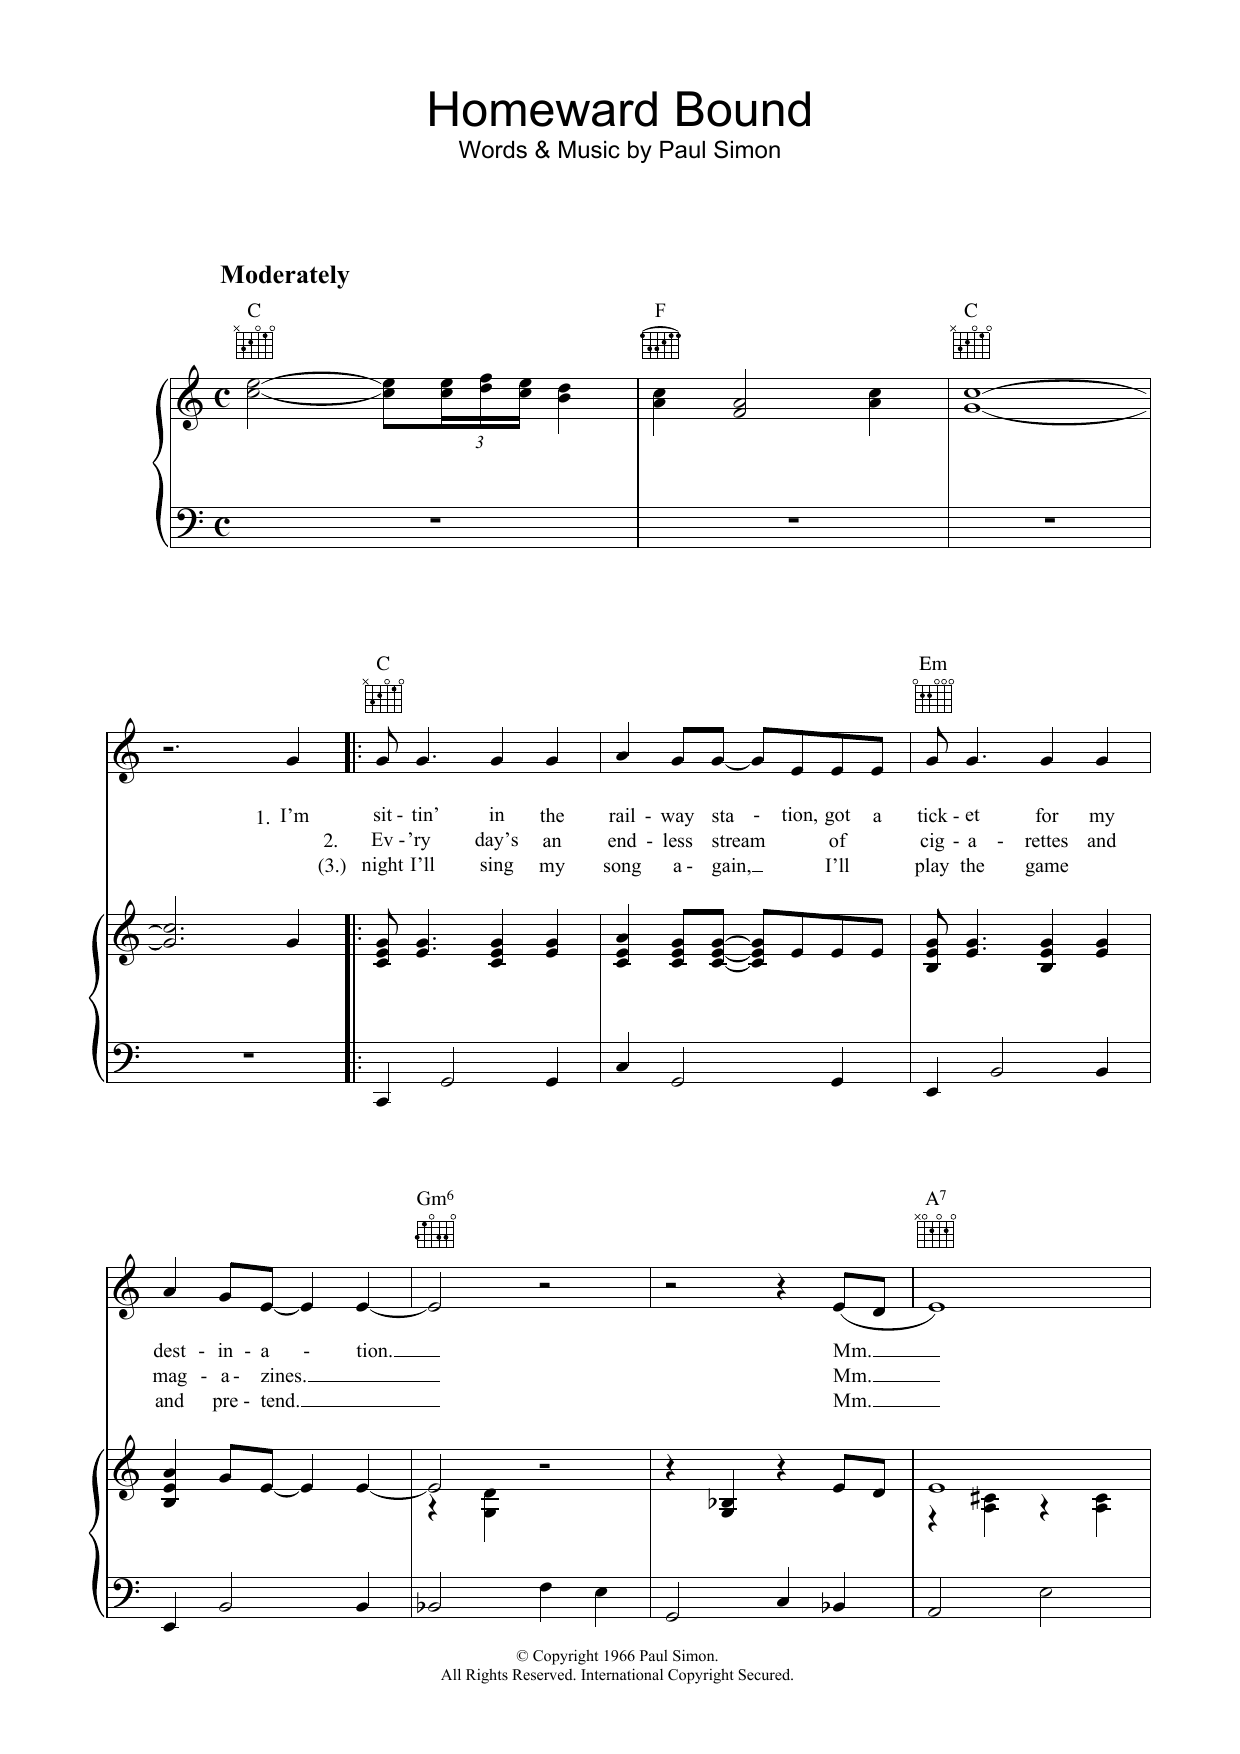 Simon & Garfunkel Homeward Bound Sheet Music Notes & Chords for Piano Chords/Lyrics - Download or Print PDF